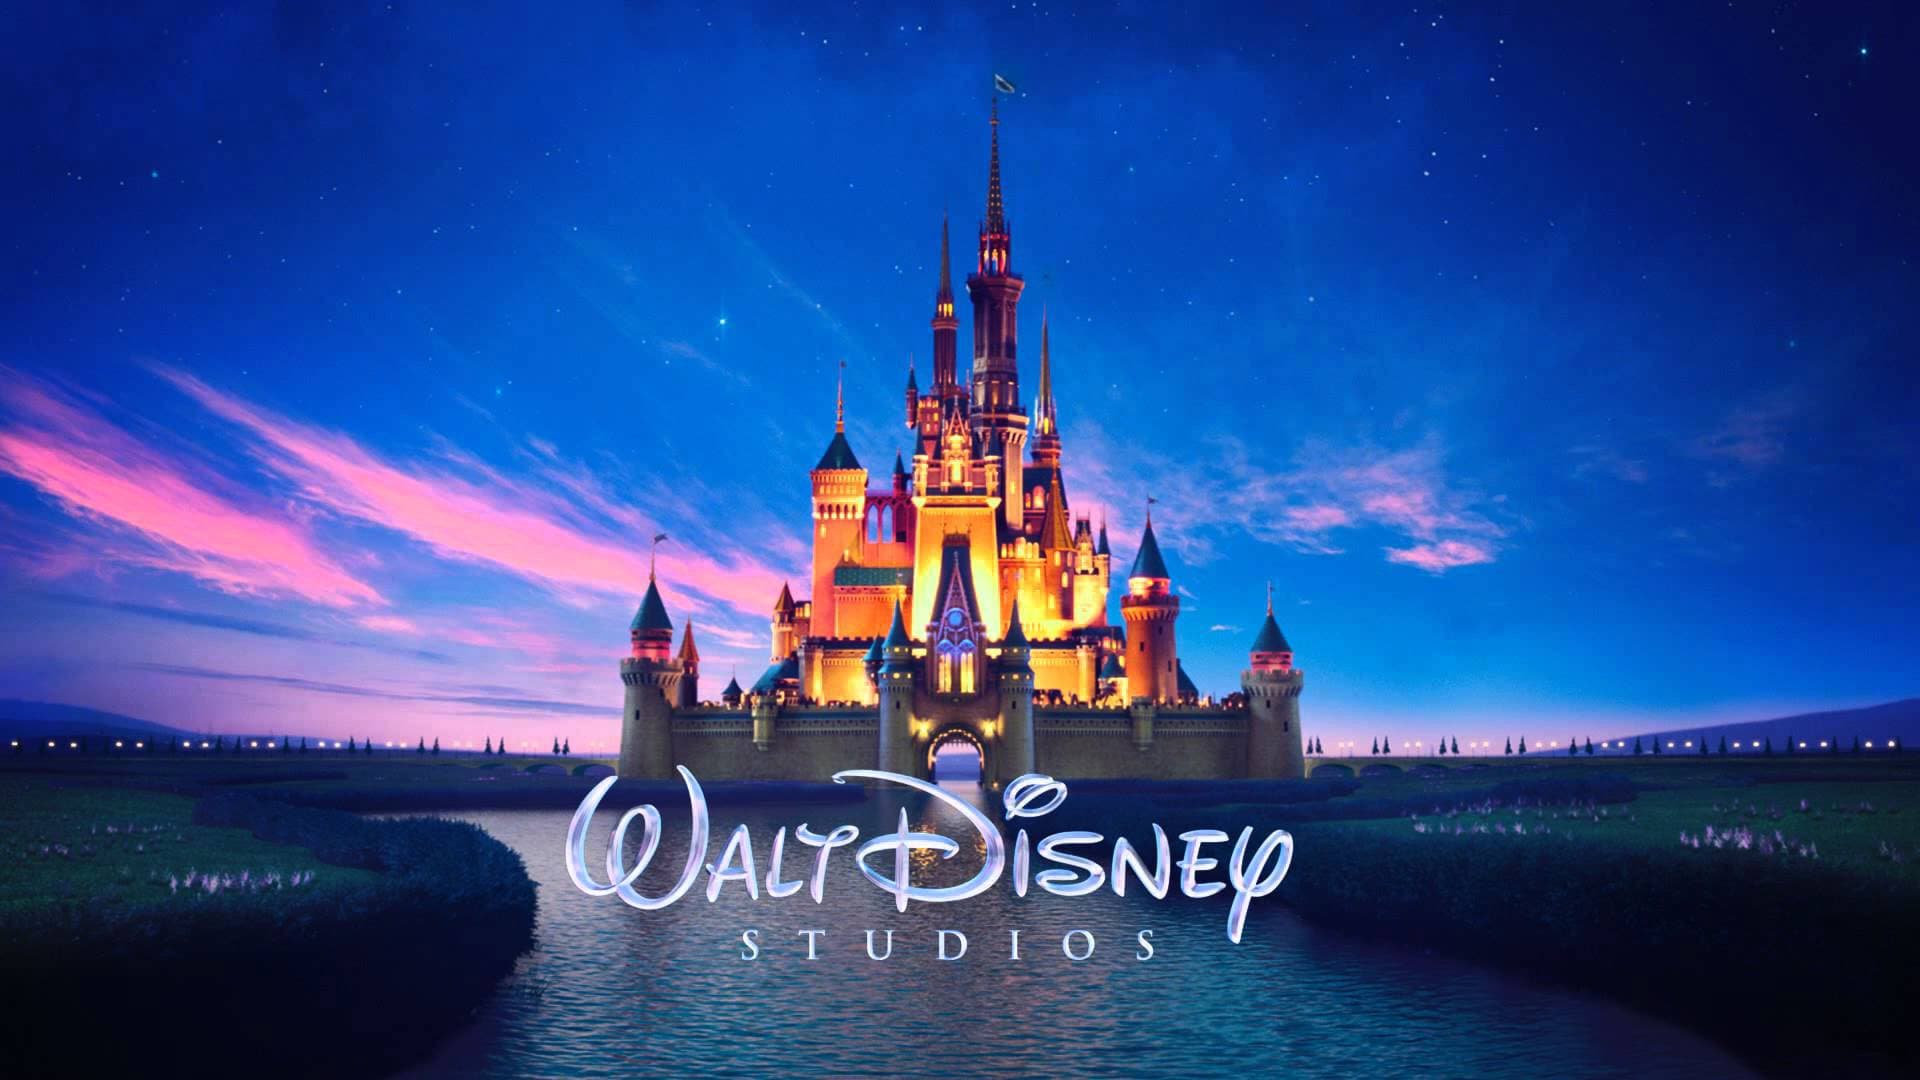 Rekordot döntött idei globális bevételével a Disney